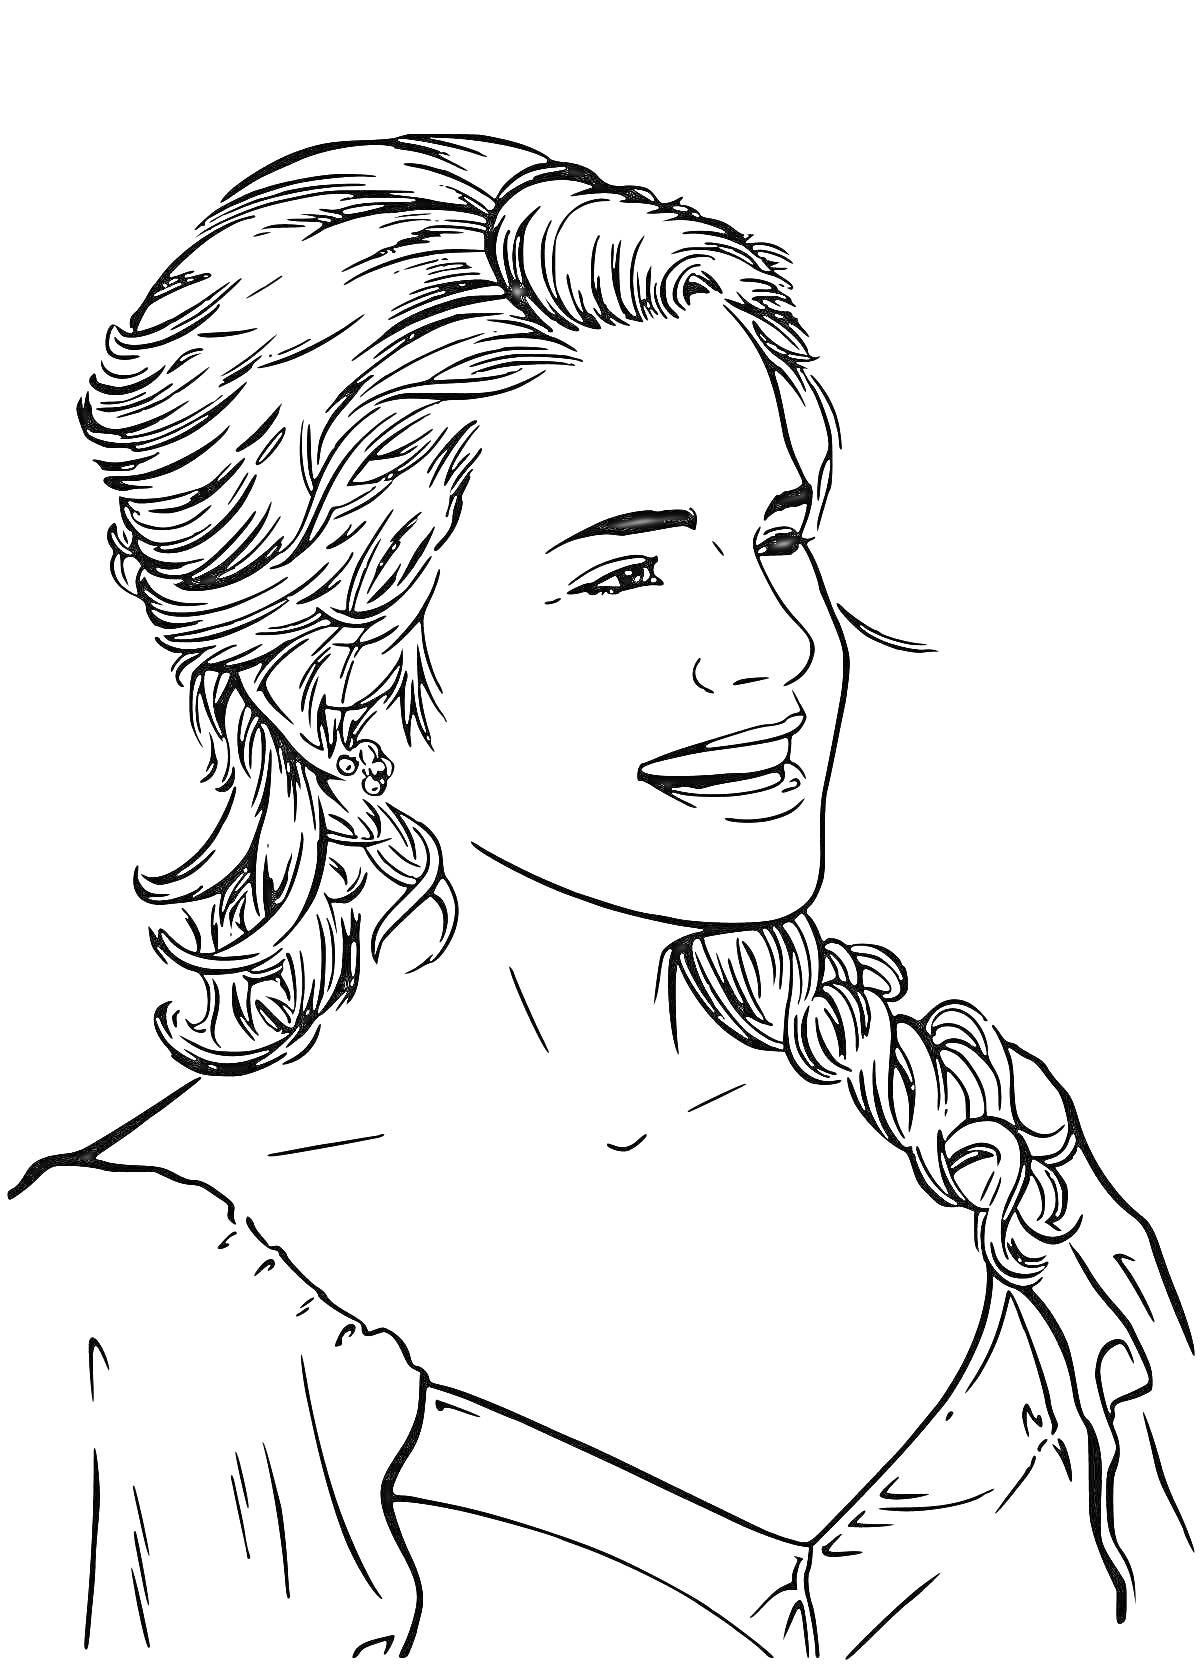 Раскраска Девушка с длинными волосами, заплетенными в косу и легкой улыбкой на лице